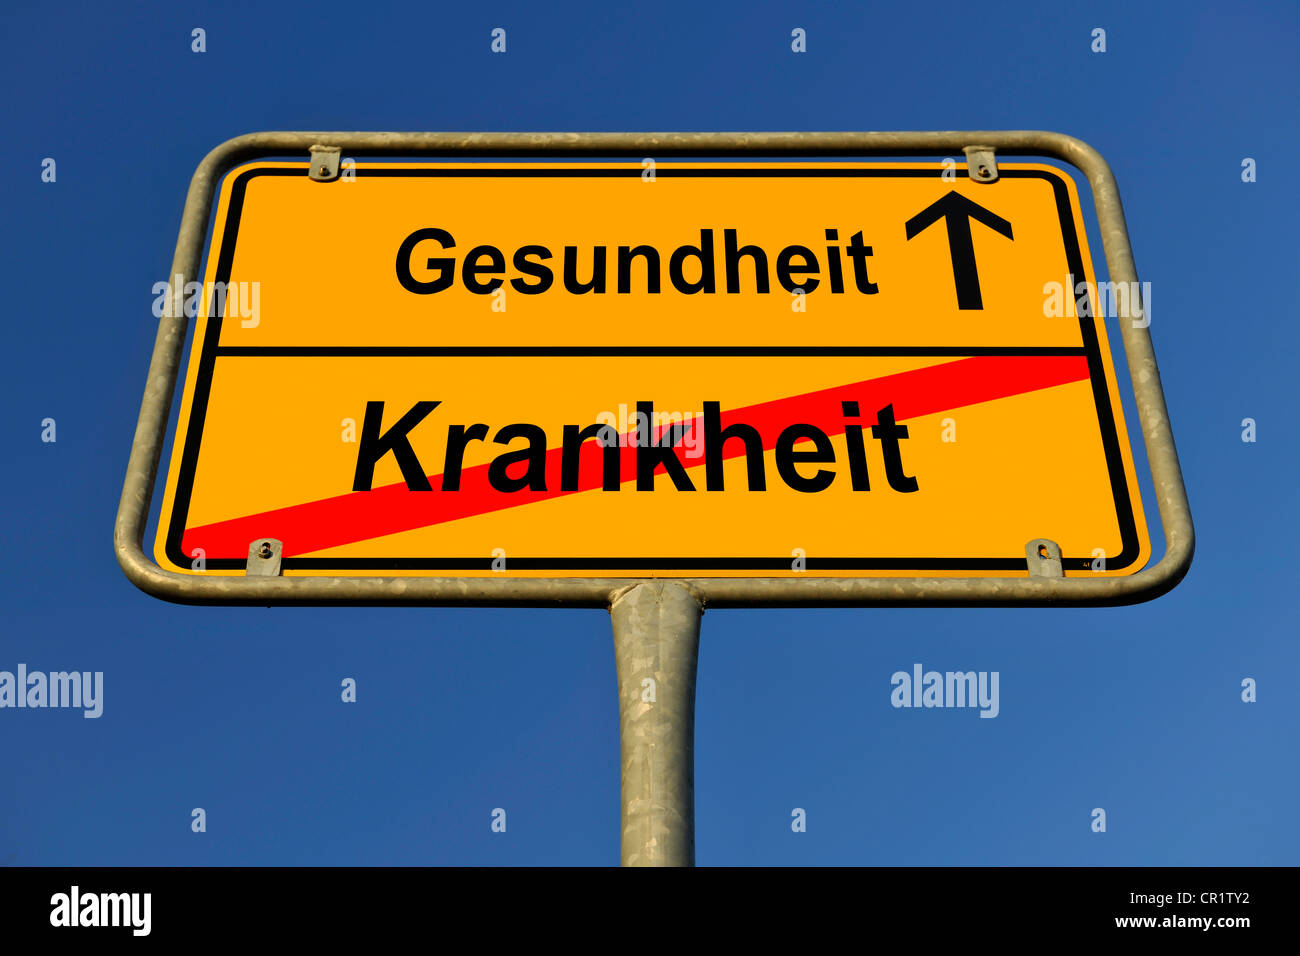 Límite ciudad signo, imagen simbólica para el camino desde Krankheit a Gesundheit, Alemán para pasar de enfermos a recobrar la salud Foto de stock